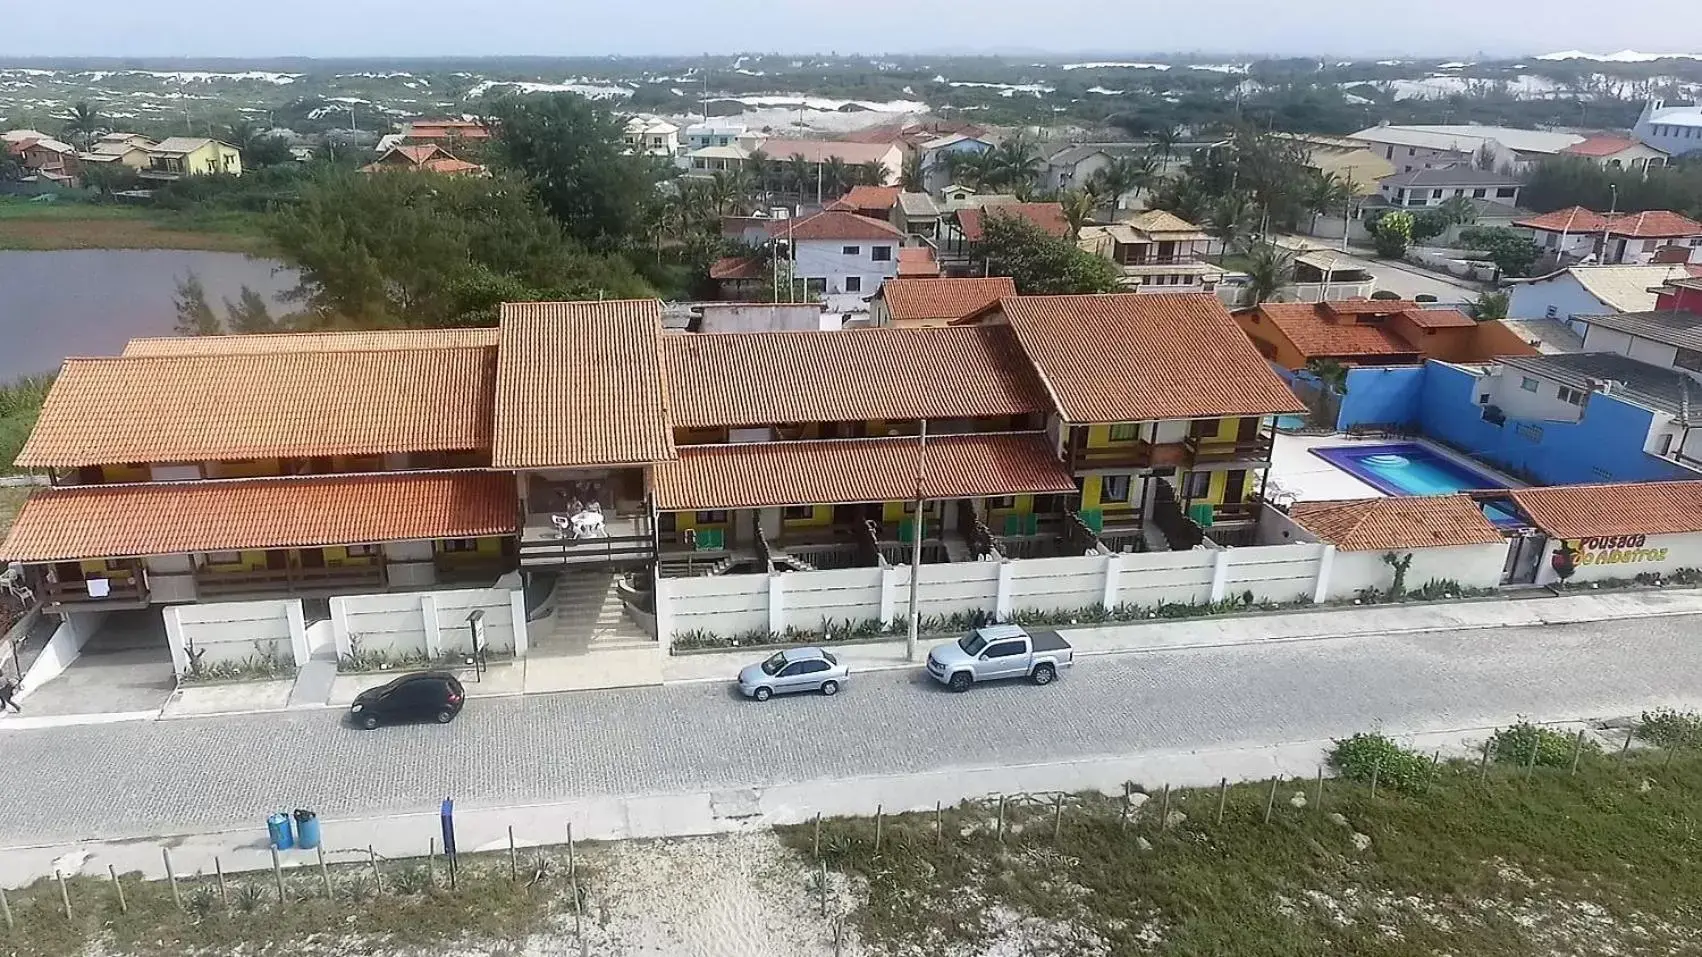 Property building, Bird's-eye View in Pousada do Albatroz